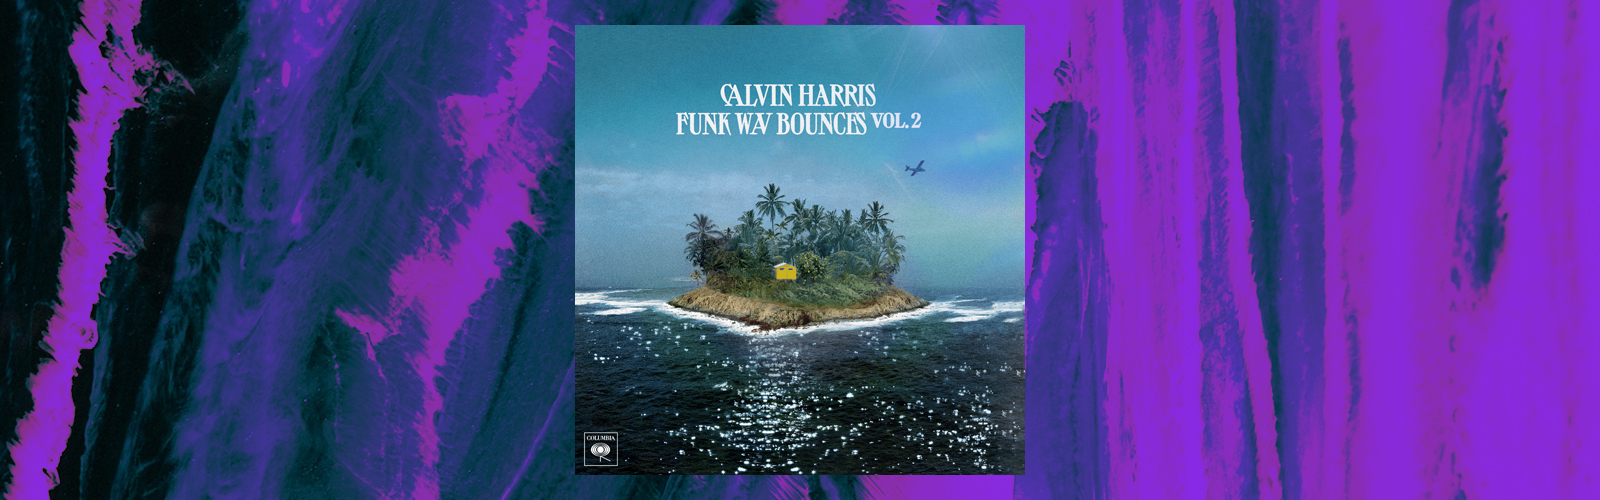 calvin harris funk wav 2 review